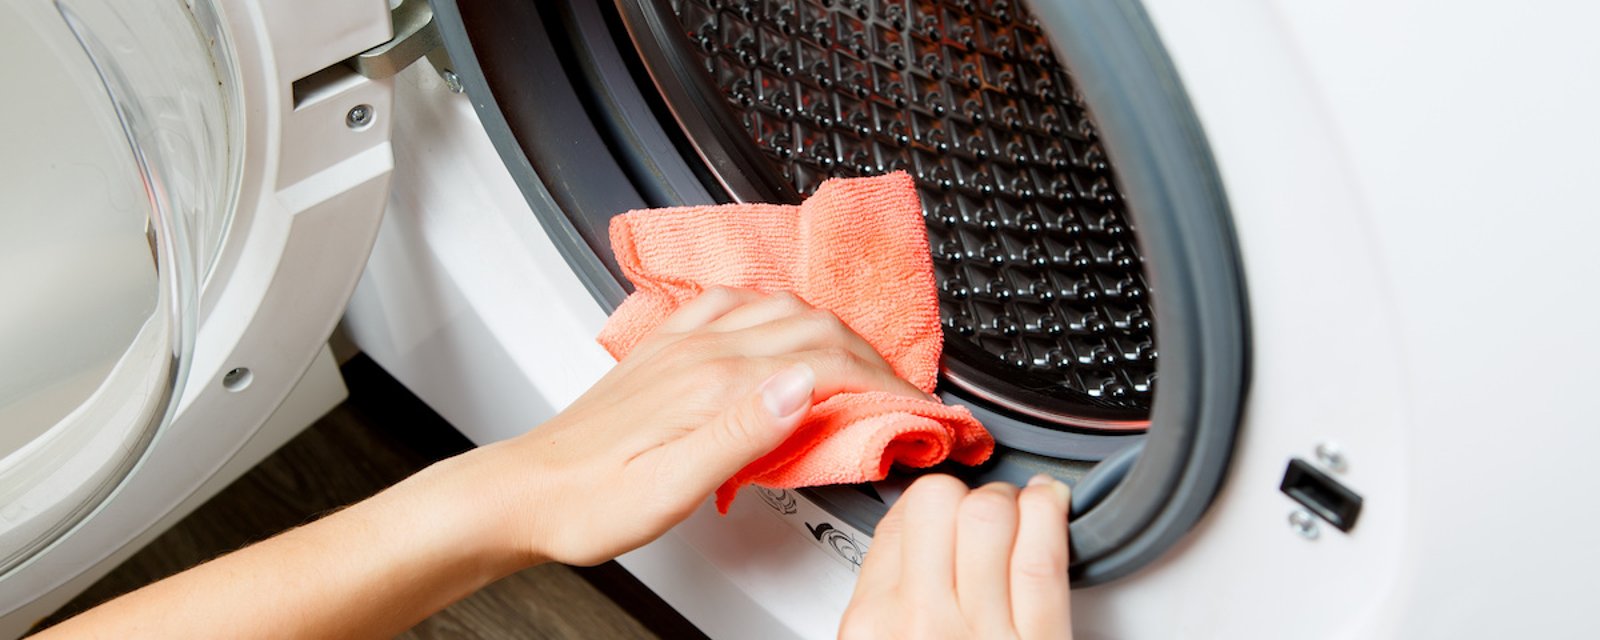 Un Québécois intente un recours collectif contre un fabricant de machines à laver.